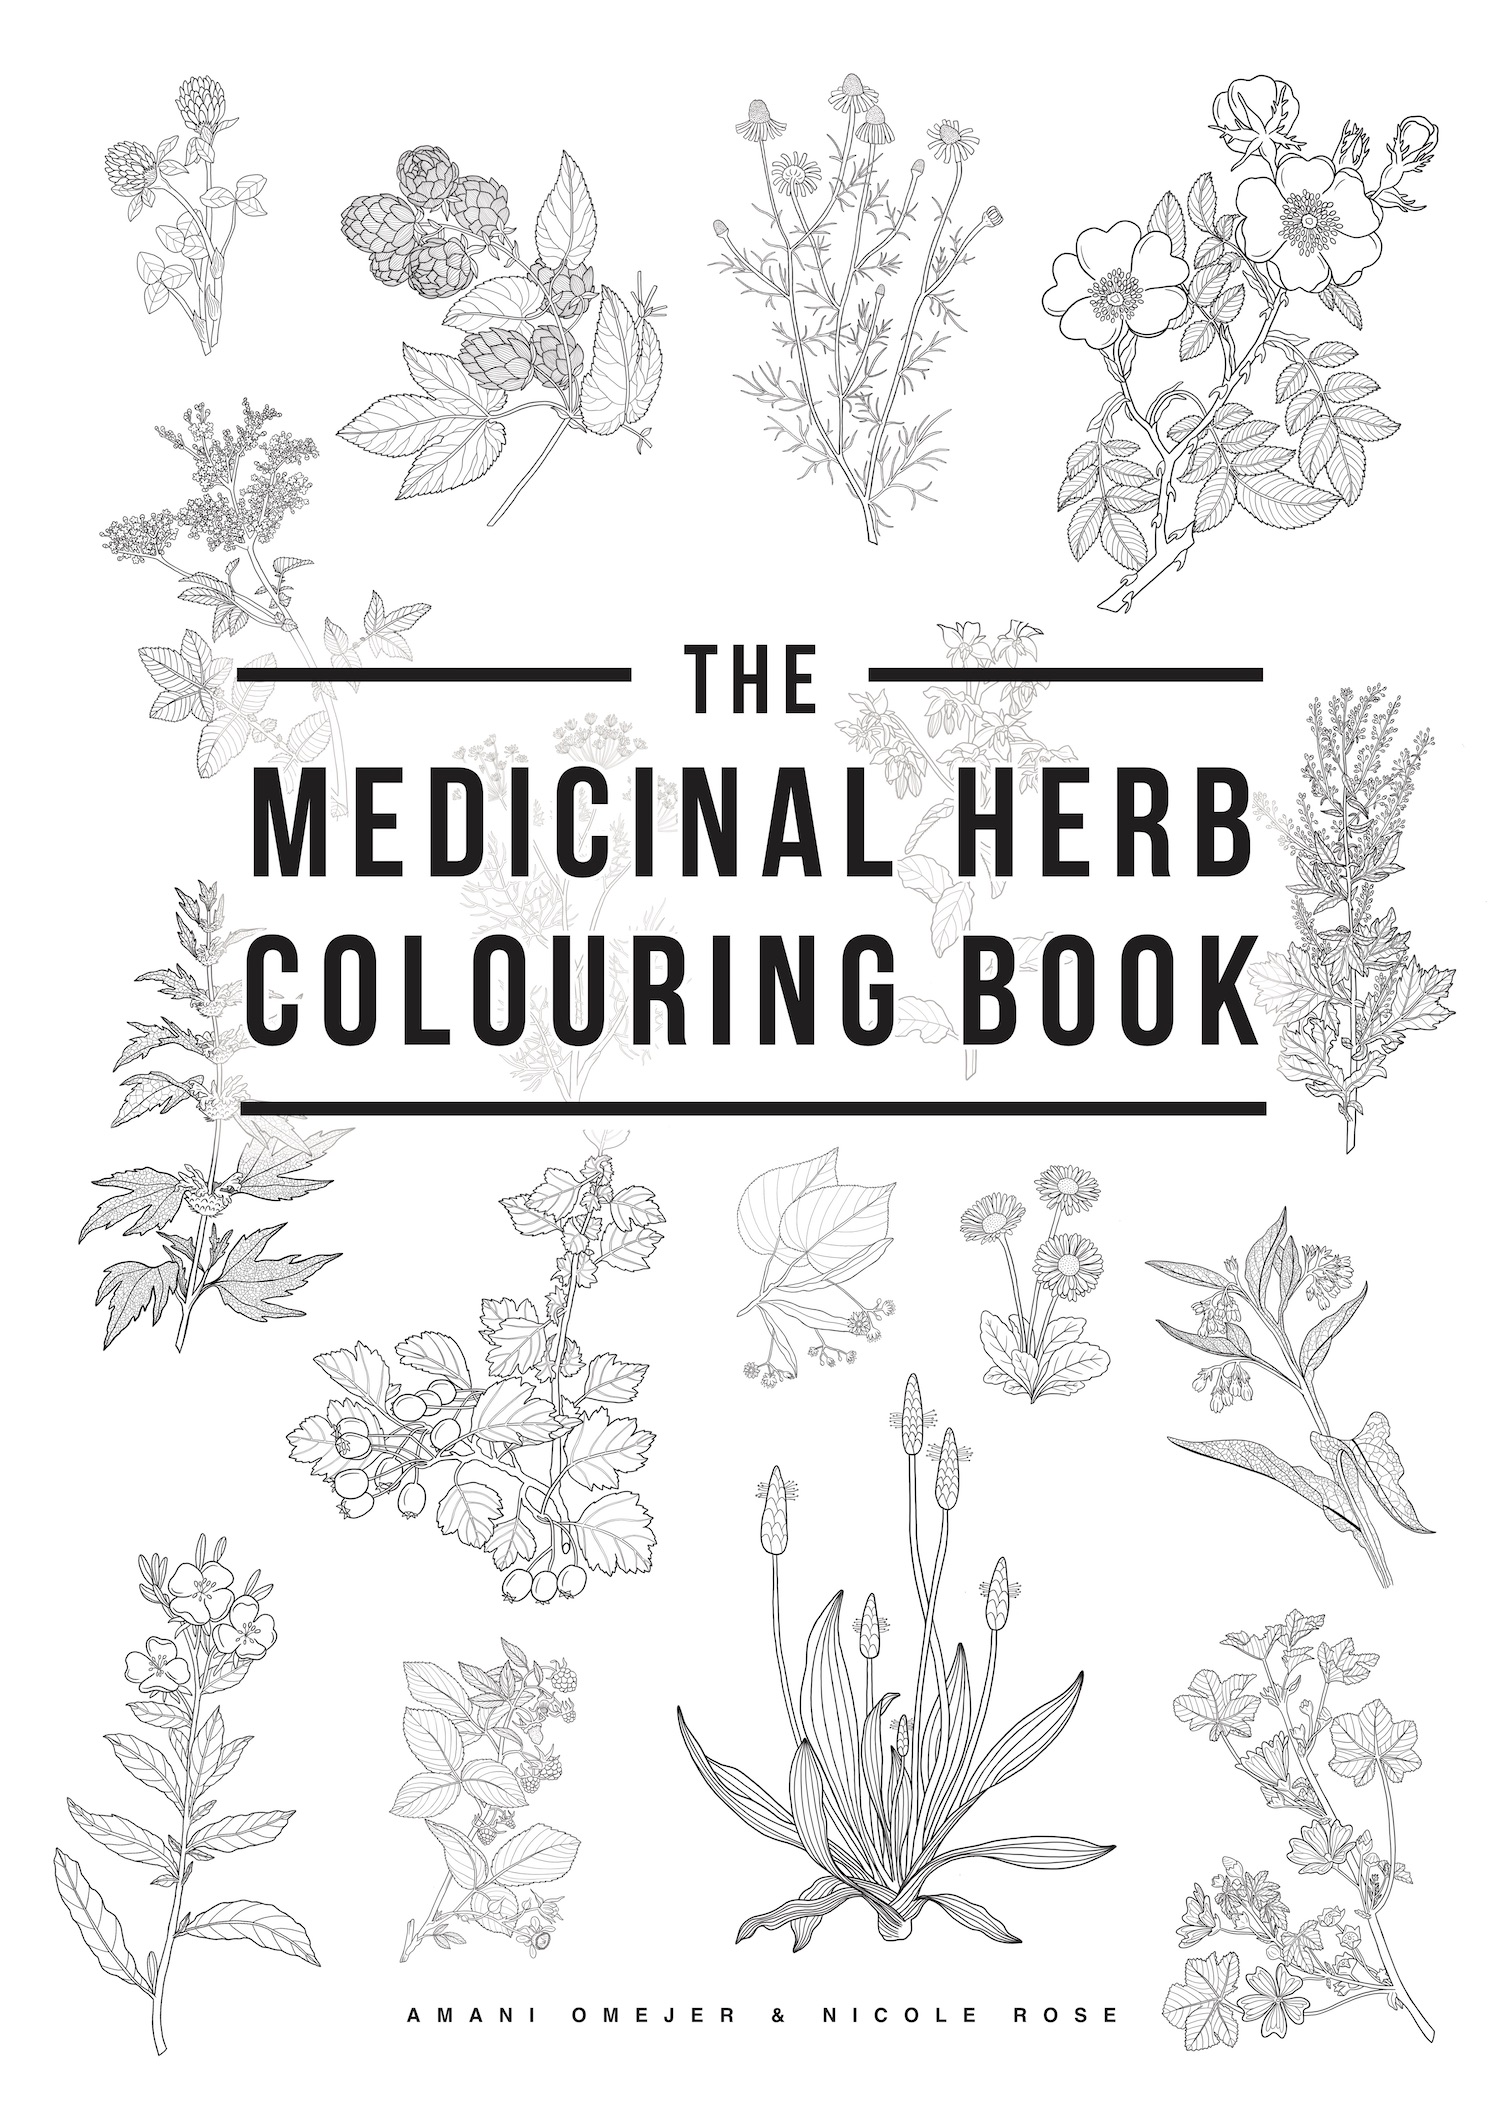 The medicinal herb colouring book â solidarity apothecary